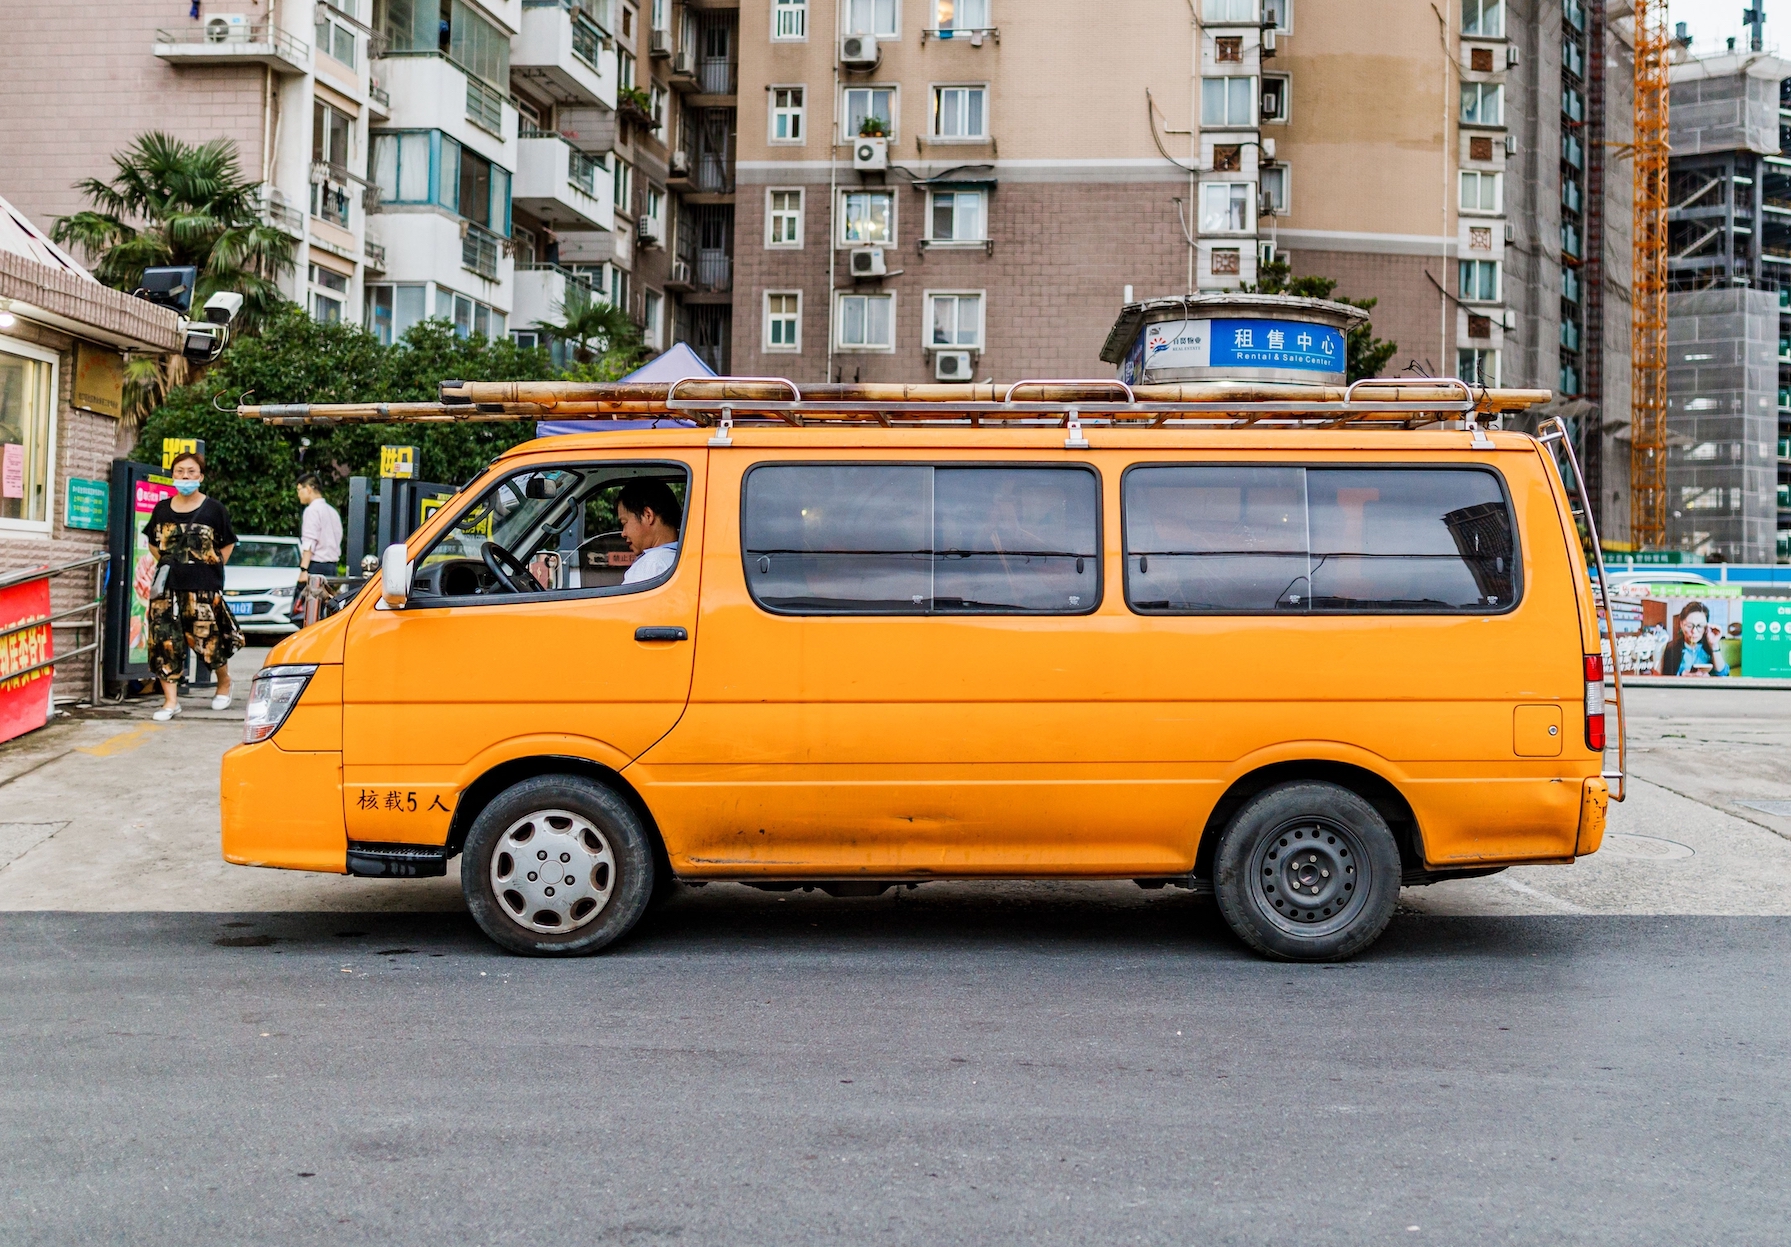 A worker sits in an orange van